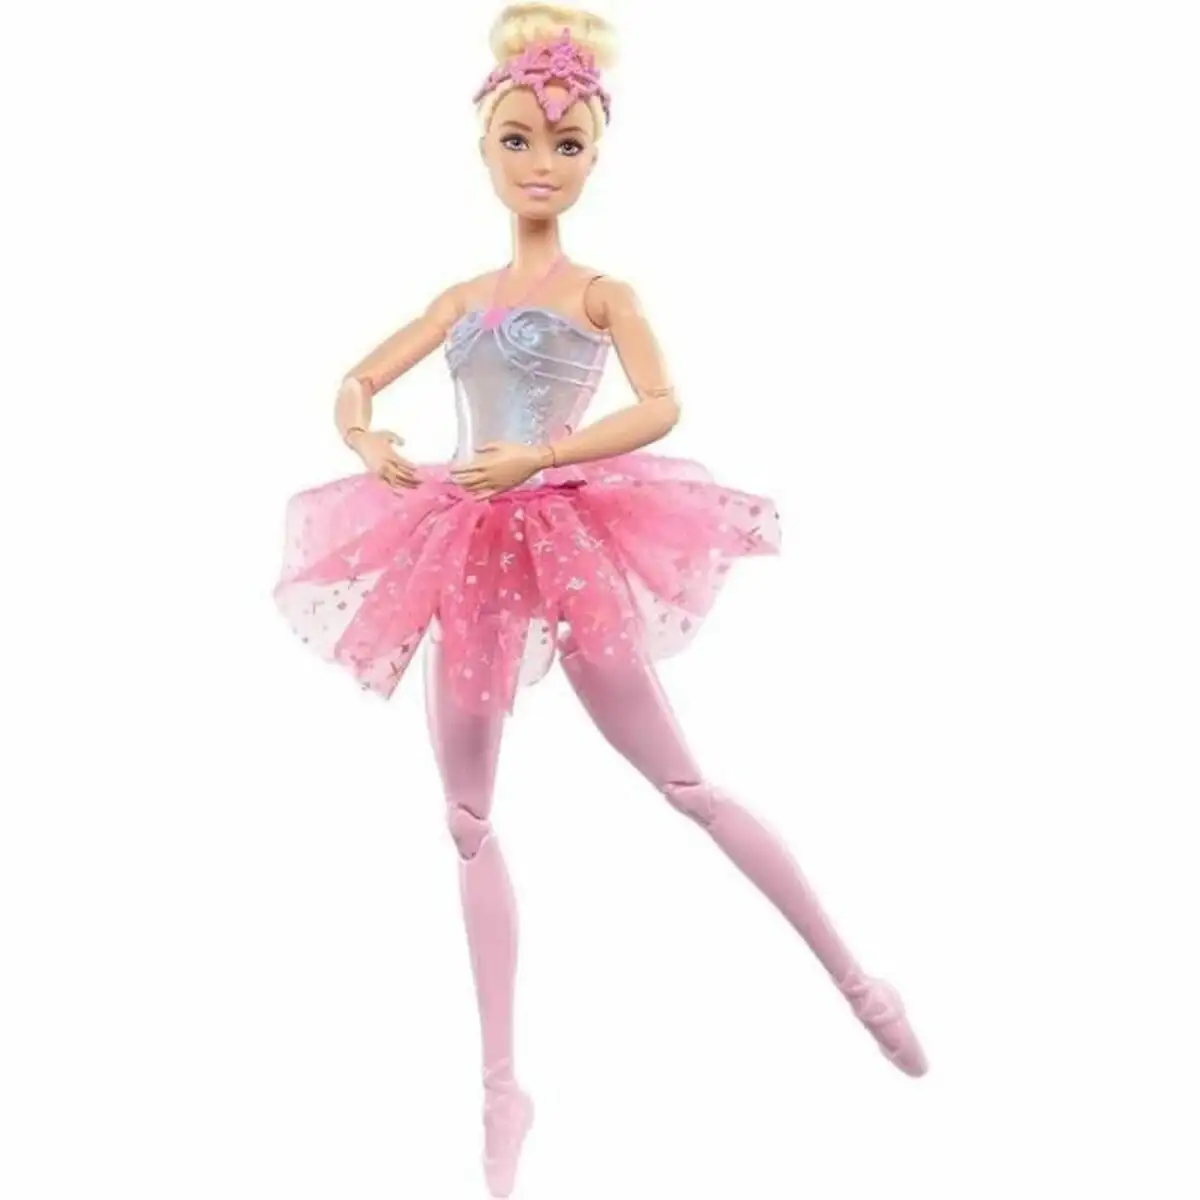 Bebe poupee barbie ballerina magic lights_3503. DIAYTAR SENEGAL - L'Art du Shopping Éclairé. Parcourez notre catalogue et choisissez parmi des produits de qualité qui satisferont vos besoins et votre style.